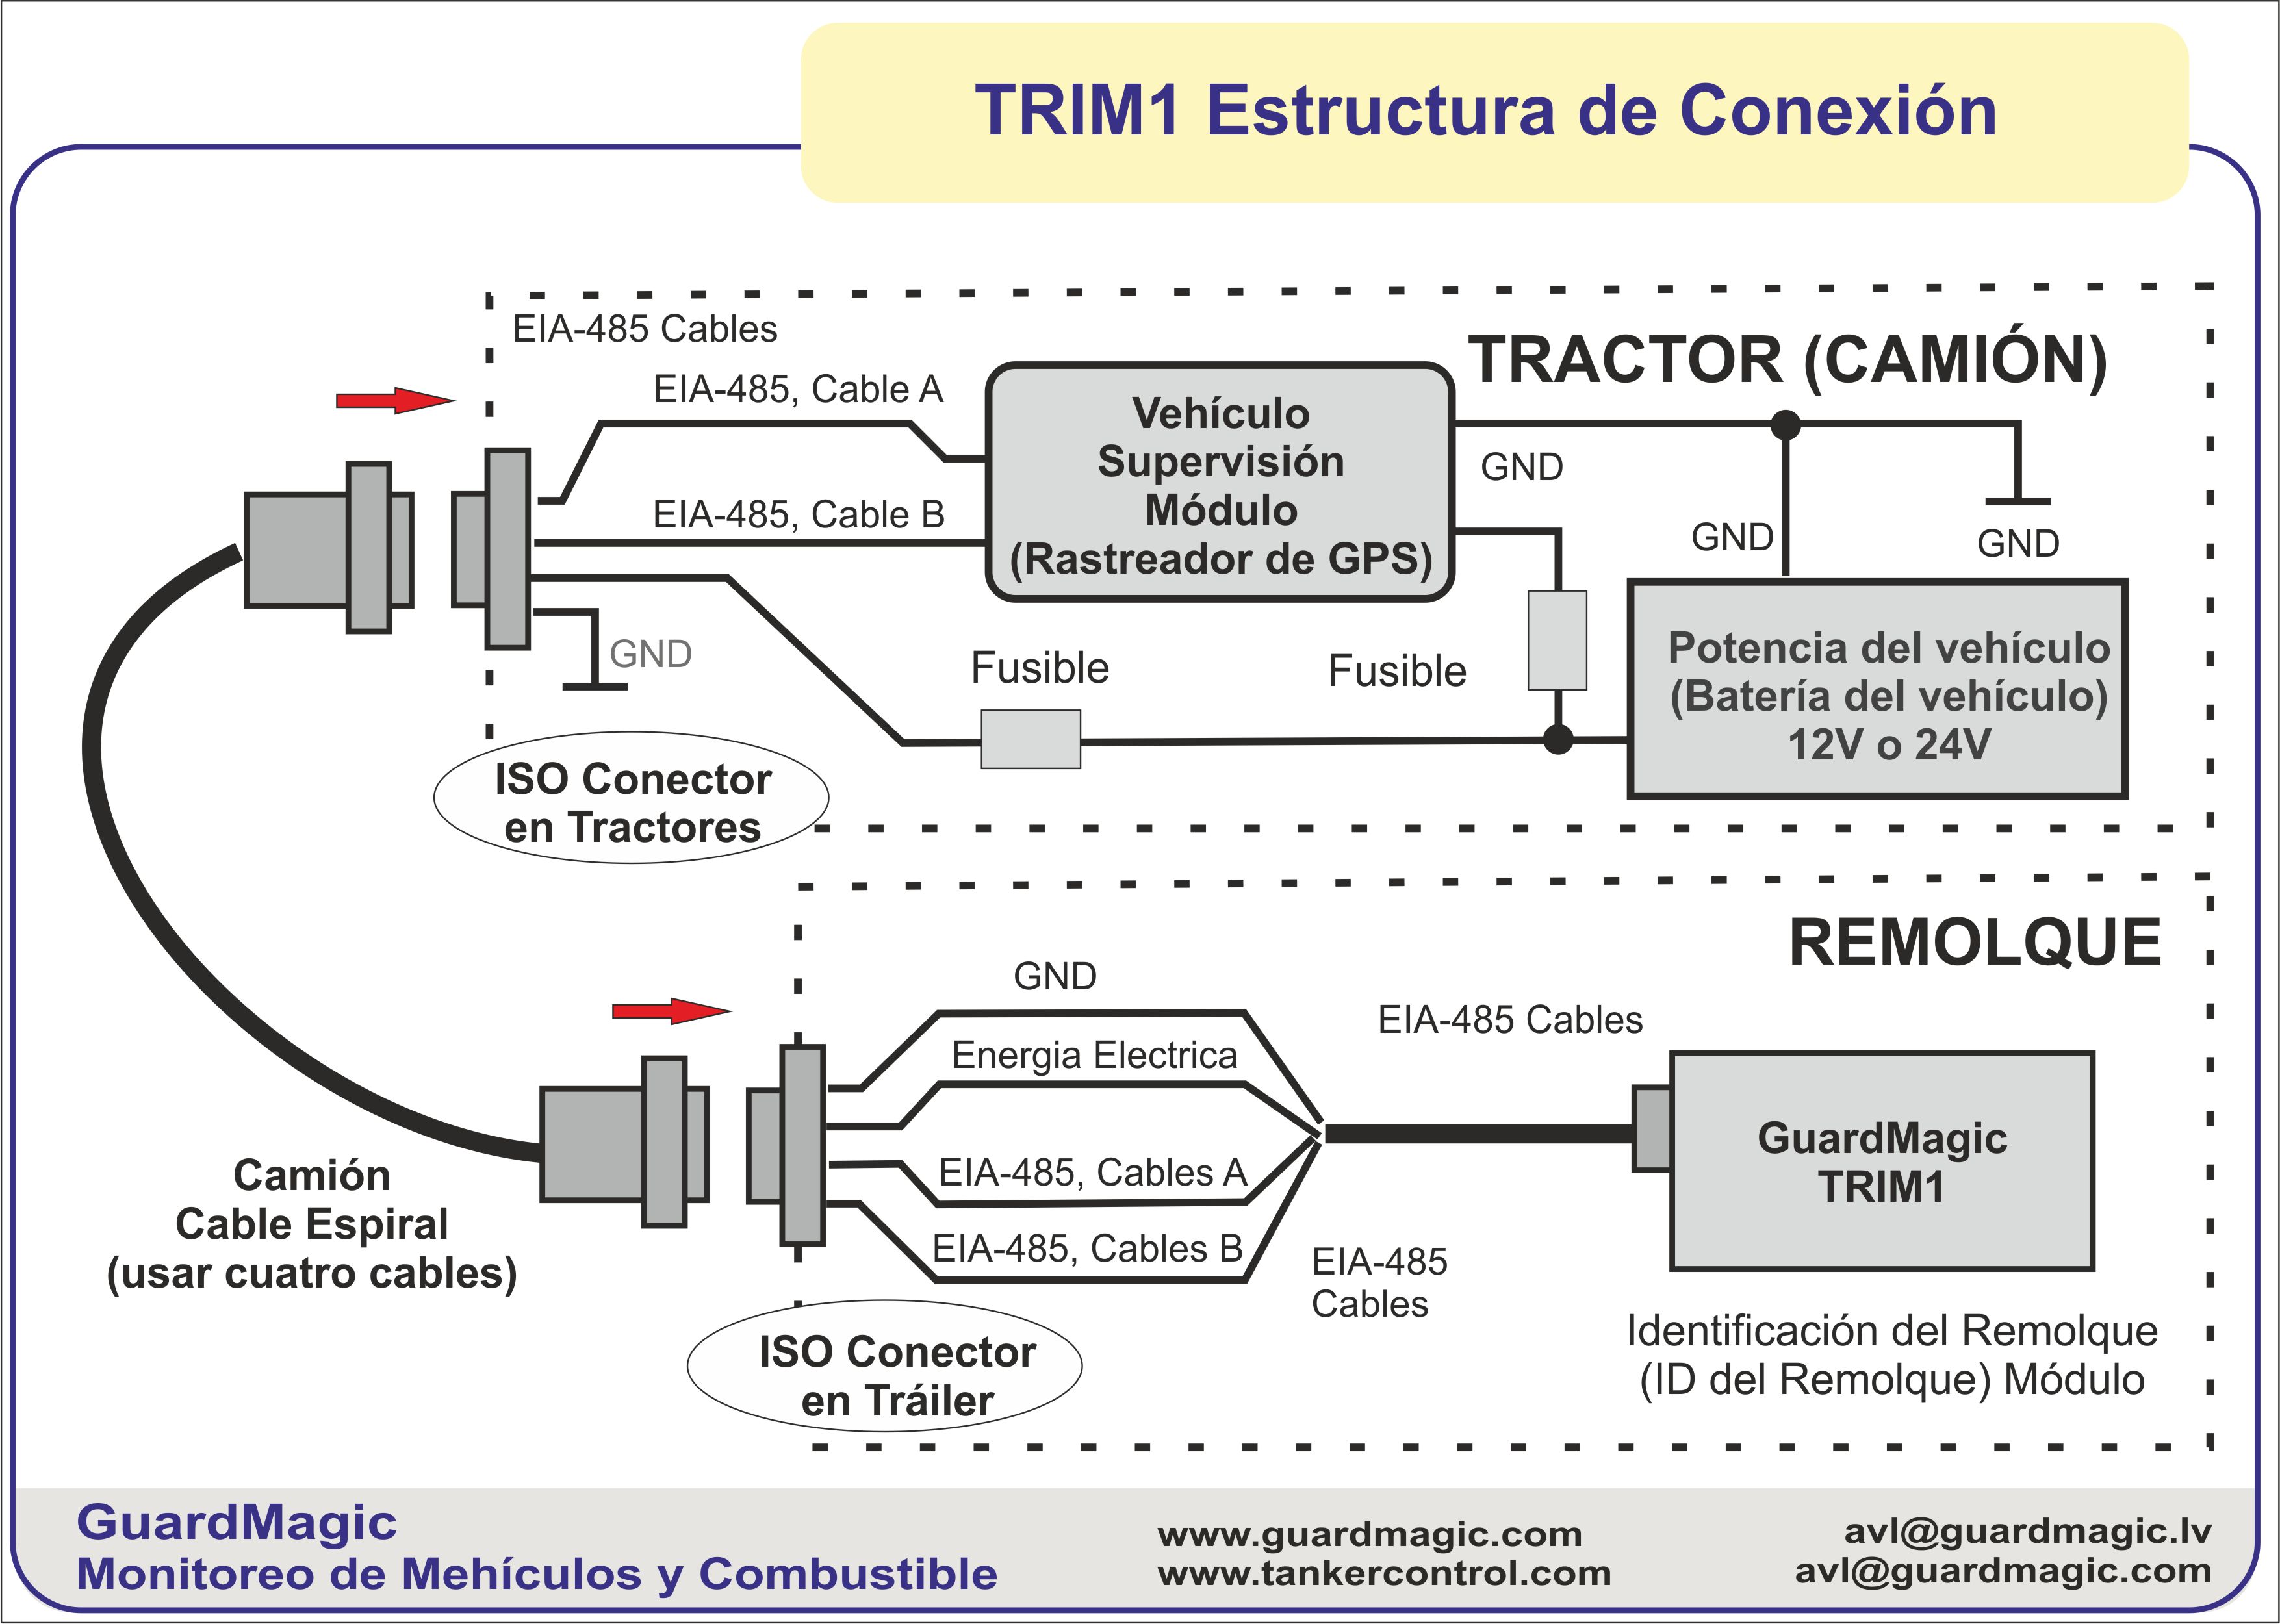 GuardMagic TRIM1: módulo de identificación de remolques